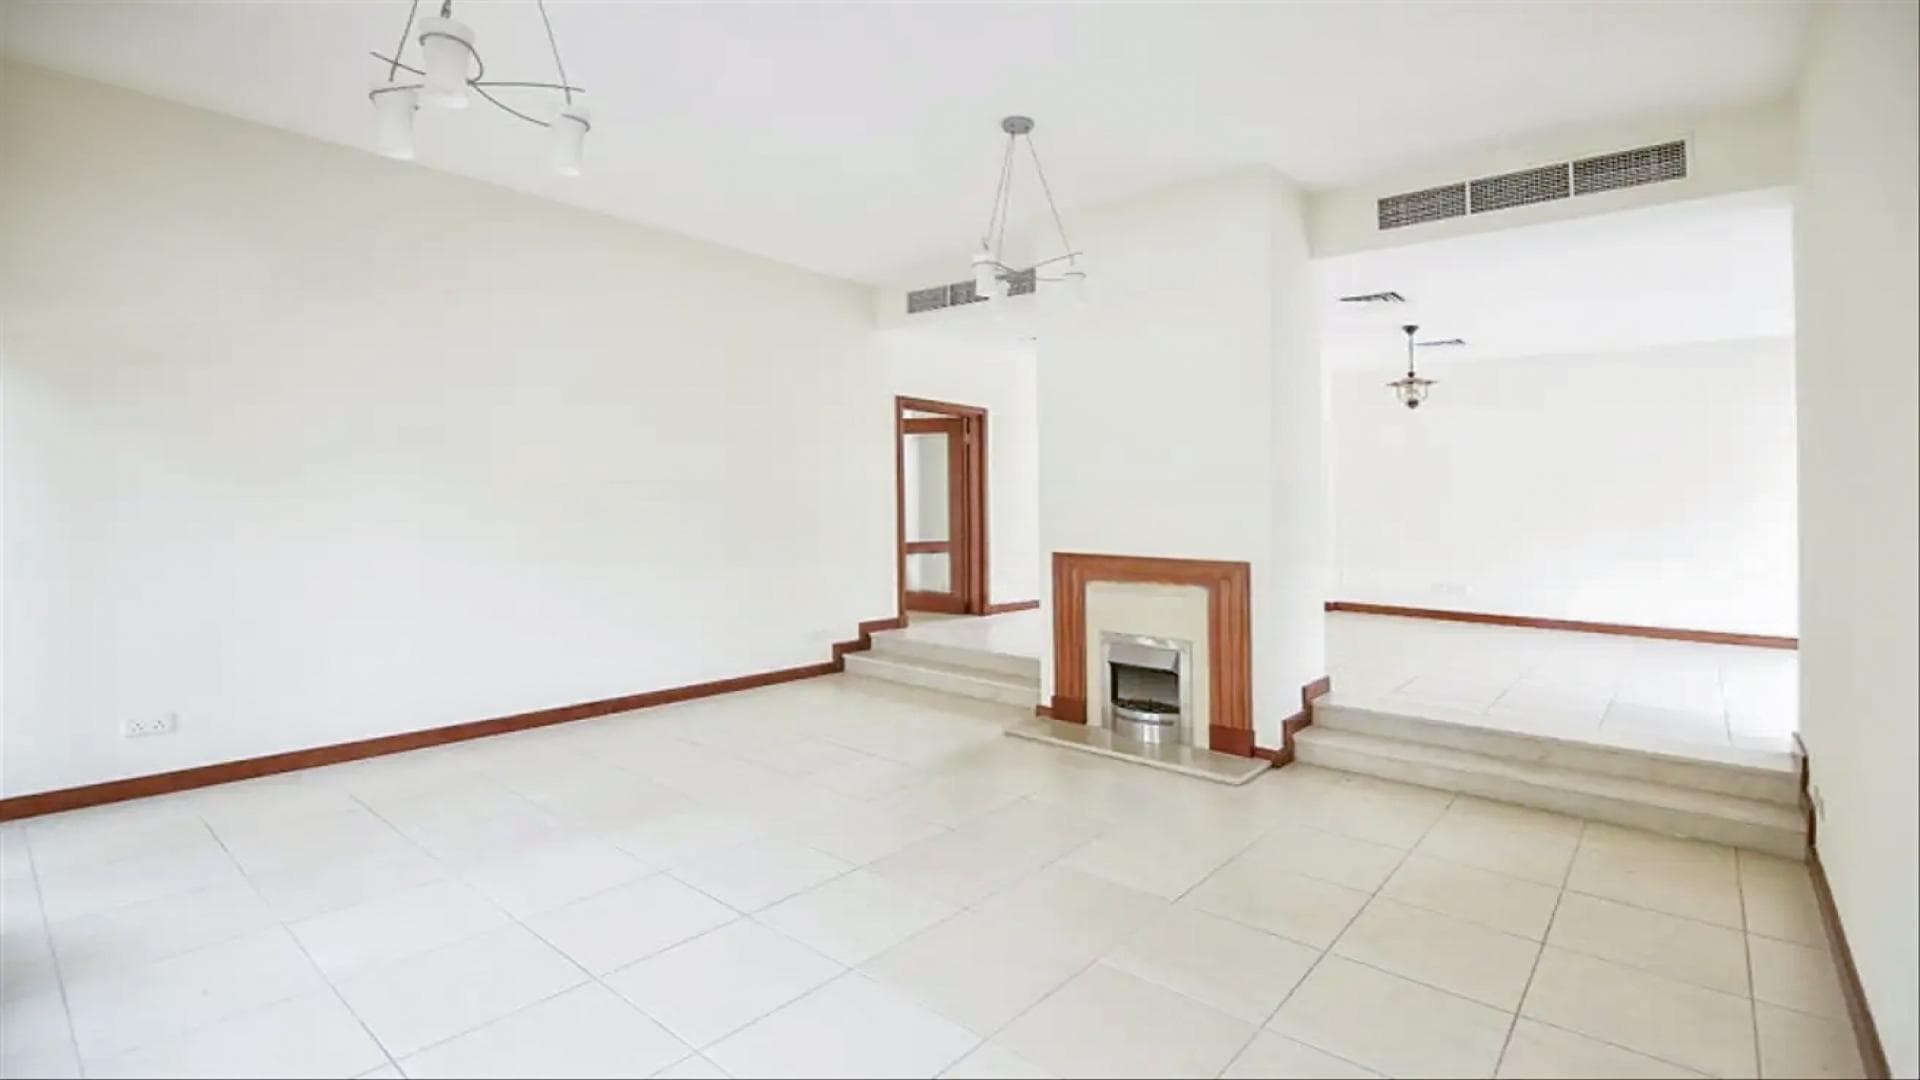 3 Bedroom Villa For Rent Al Seef Tower 3 Lp37184 1cca4c74a70f0200.jpg